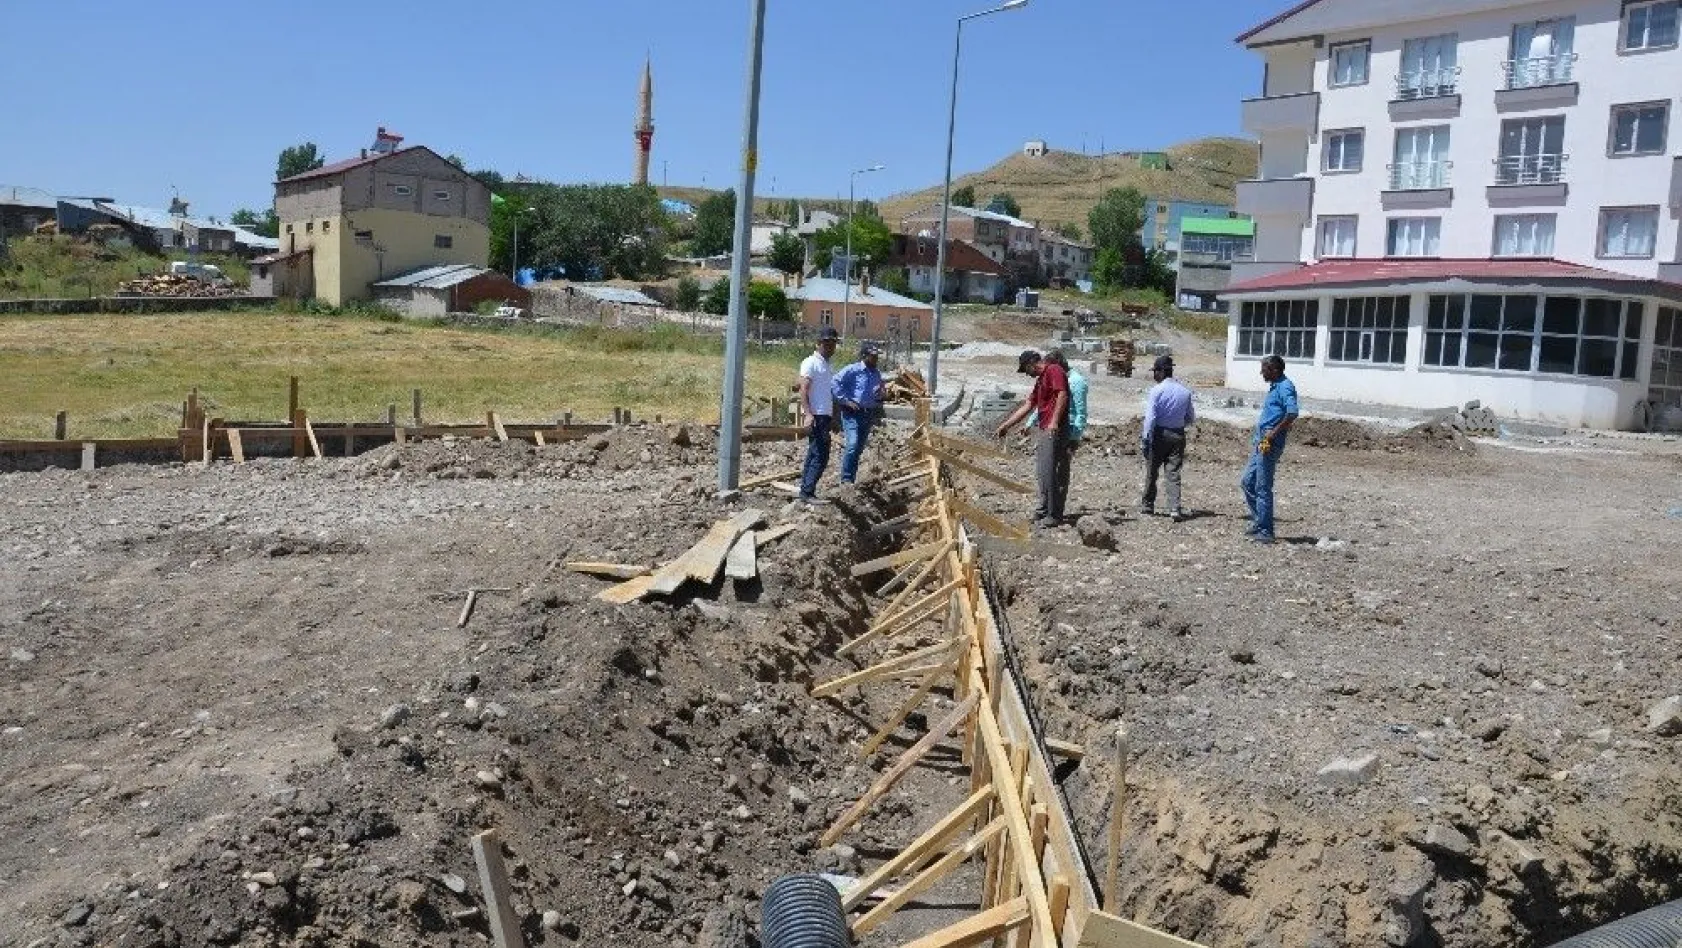 Çat Belediye Başkanı Kılıç, ilçede altyapı seferberliği başlattı
